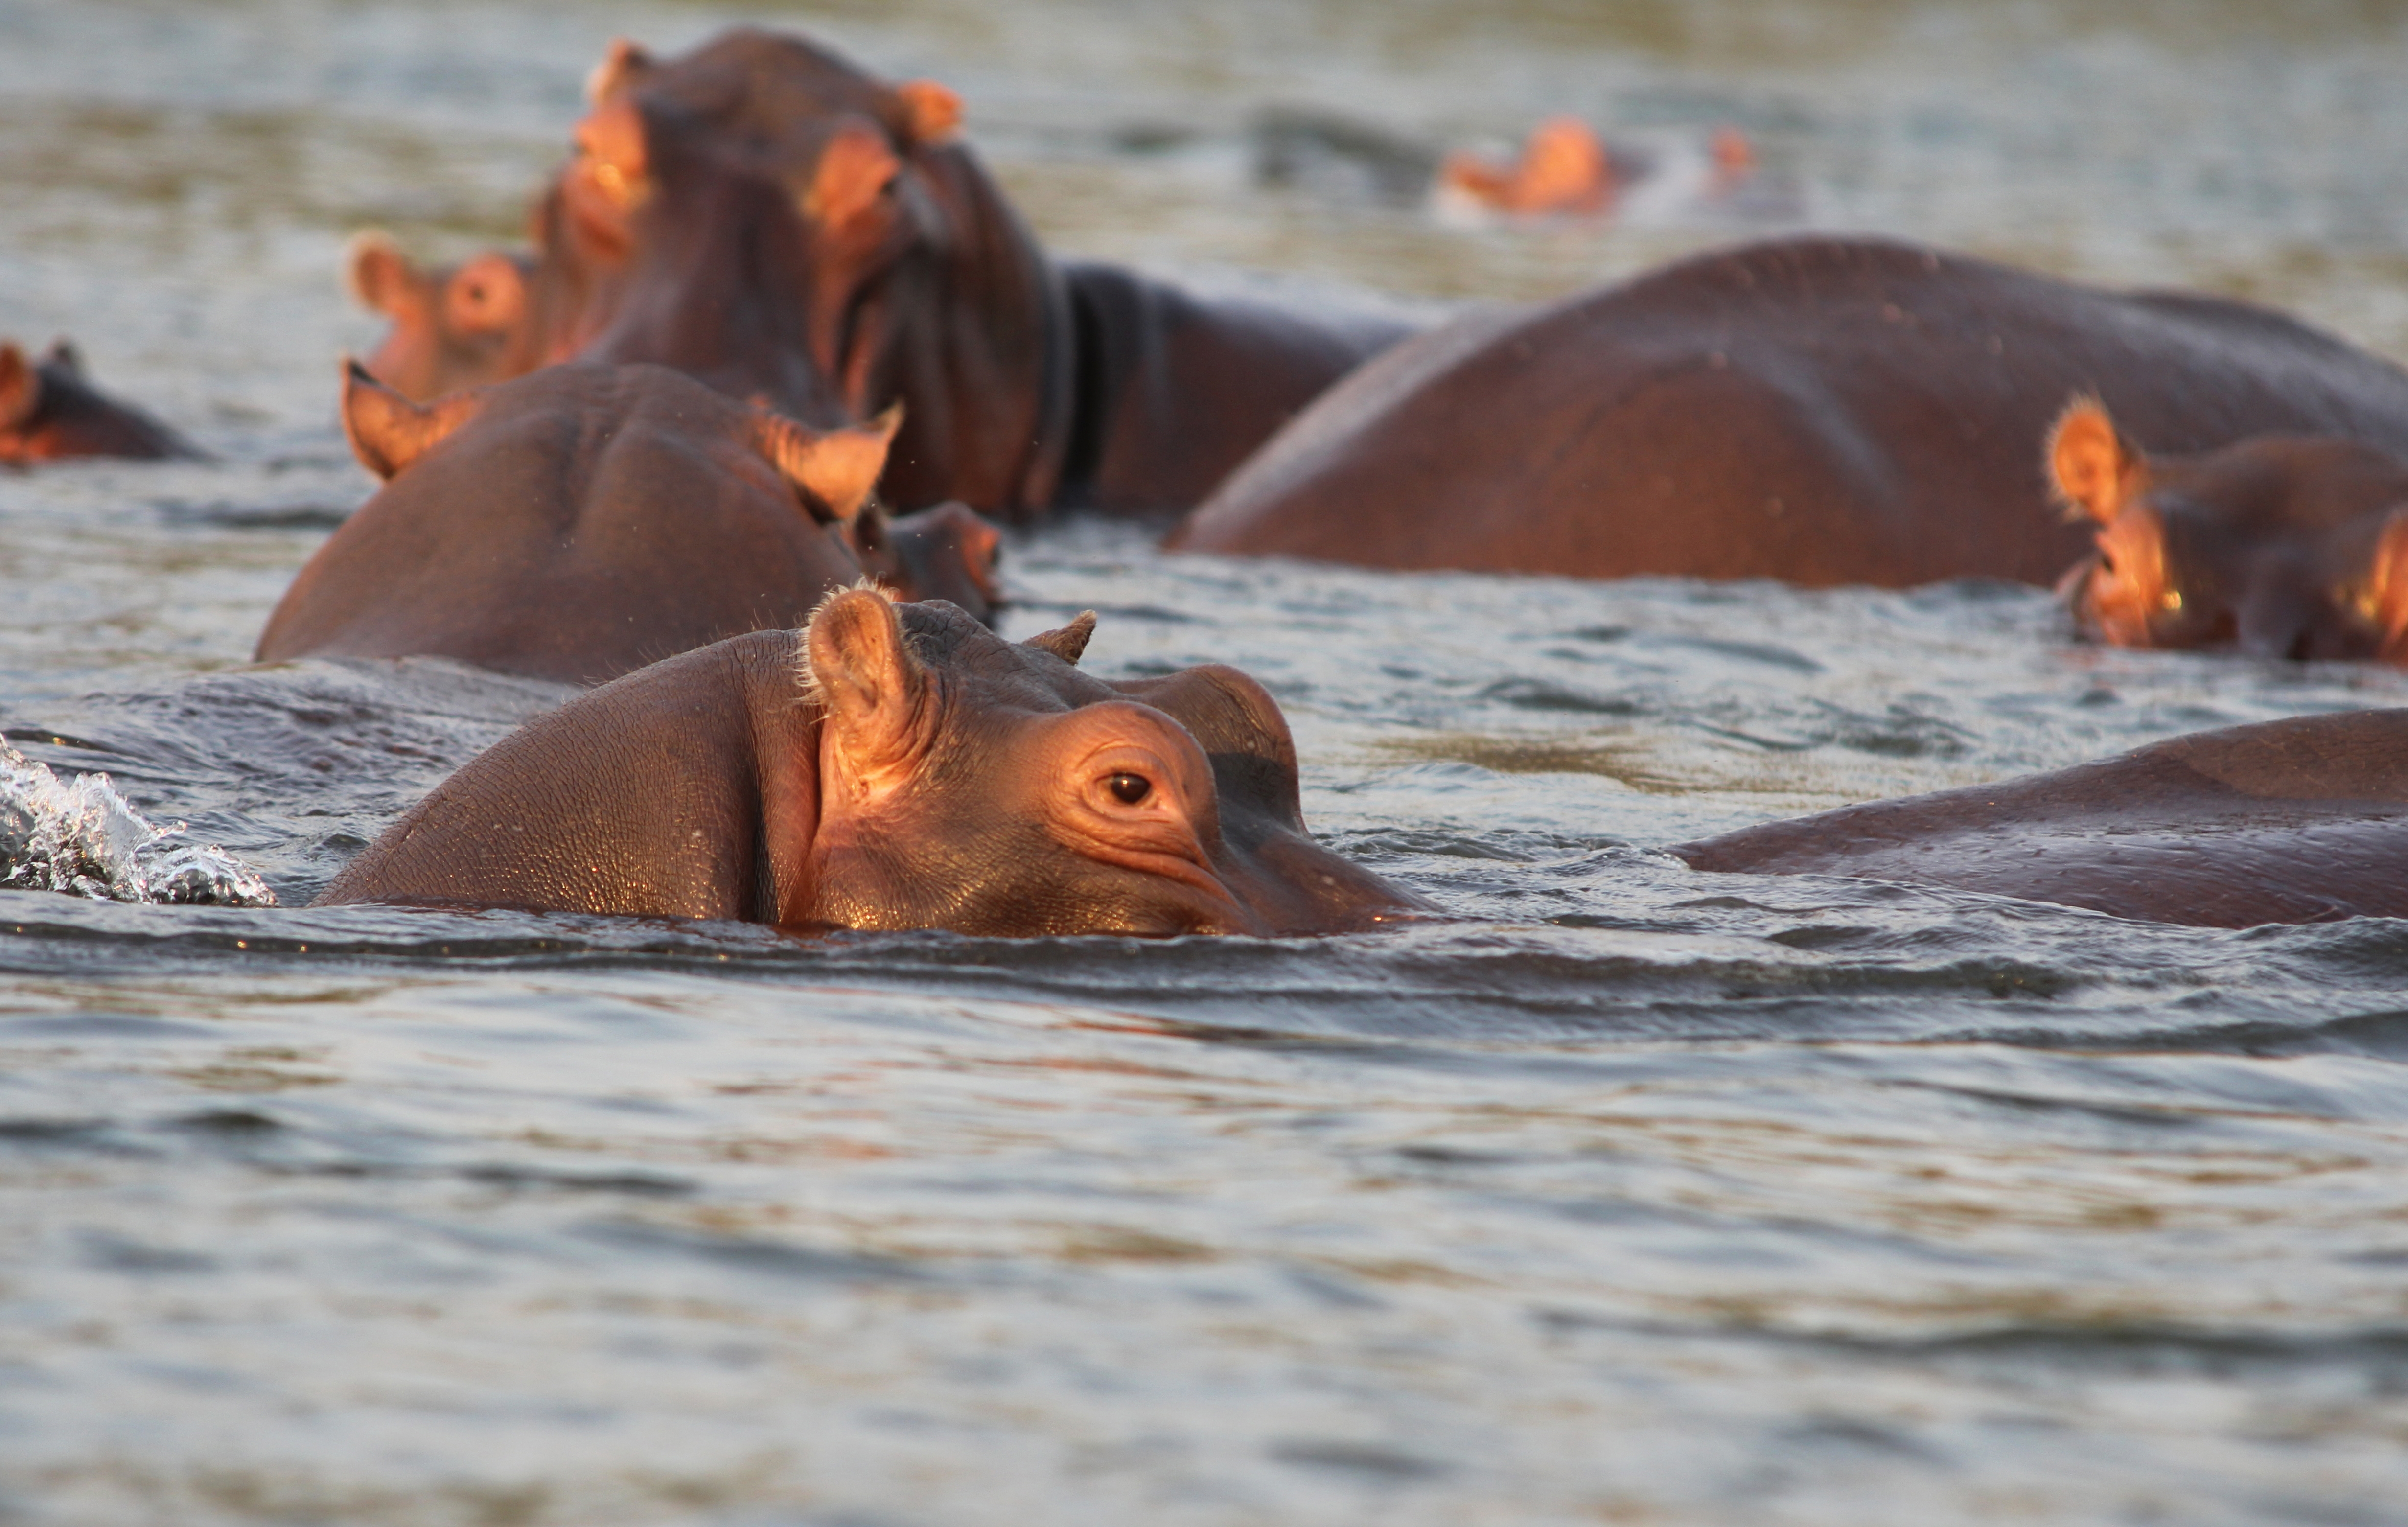 Zambia: Hippos taking a bath at lower Zambesi River